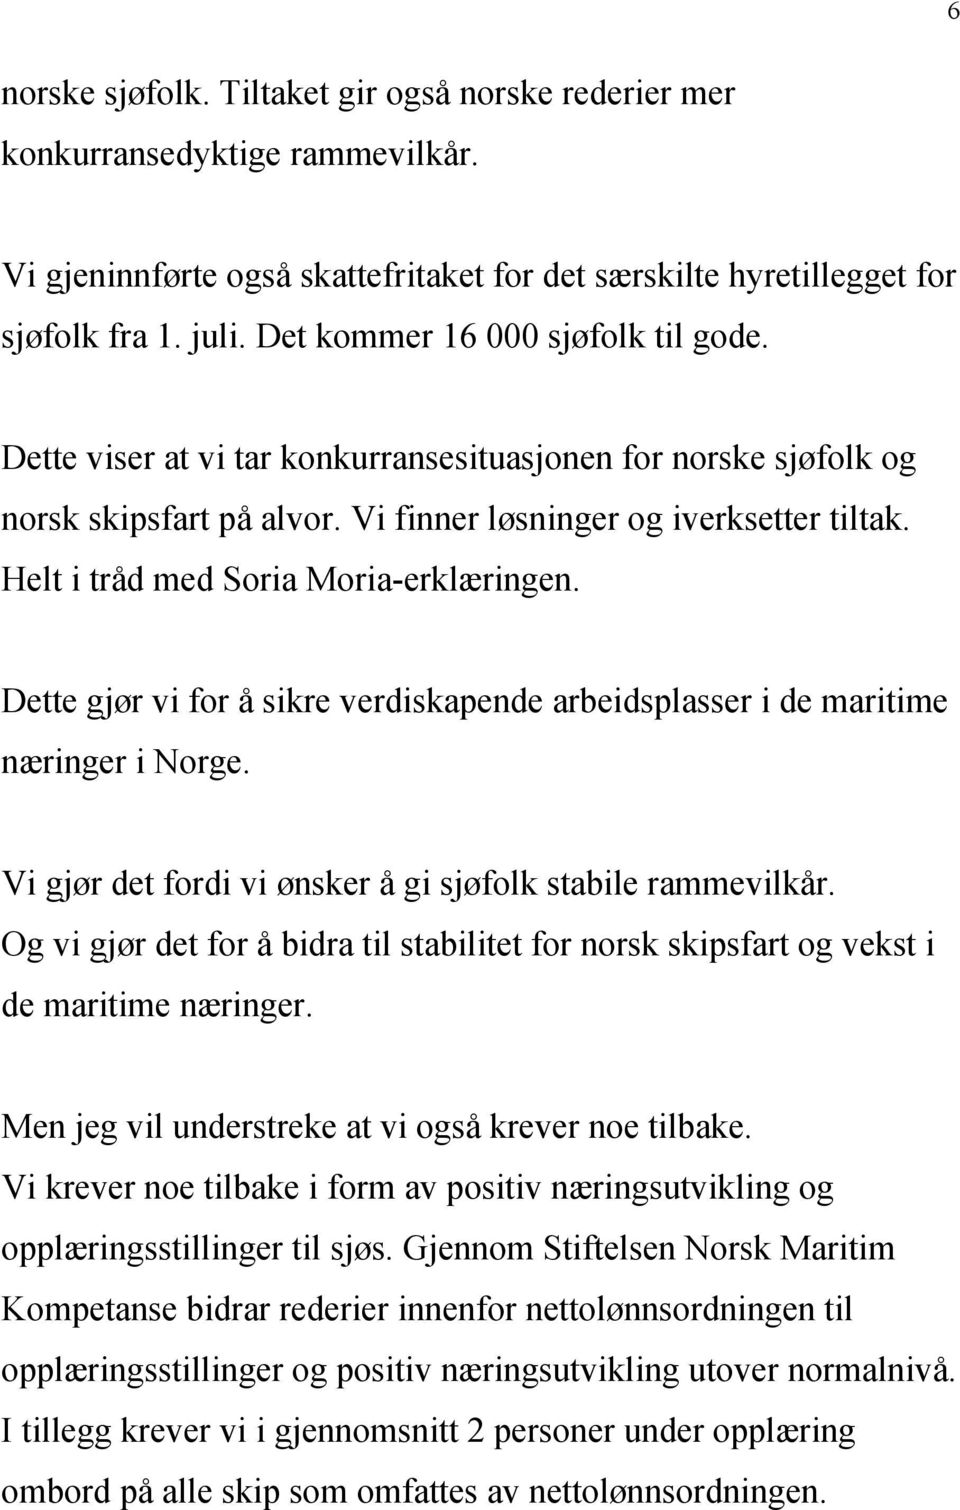 Helt i tråd med Soria Moria-erklæringen. Dette gjør vi for å sikre verdiskapende arbeidsplasser i de maritime næringer i Norge. Vi gjør det fordi vi ønsker å gi sjøfolk stabile rammevilkår.